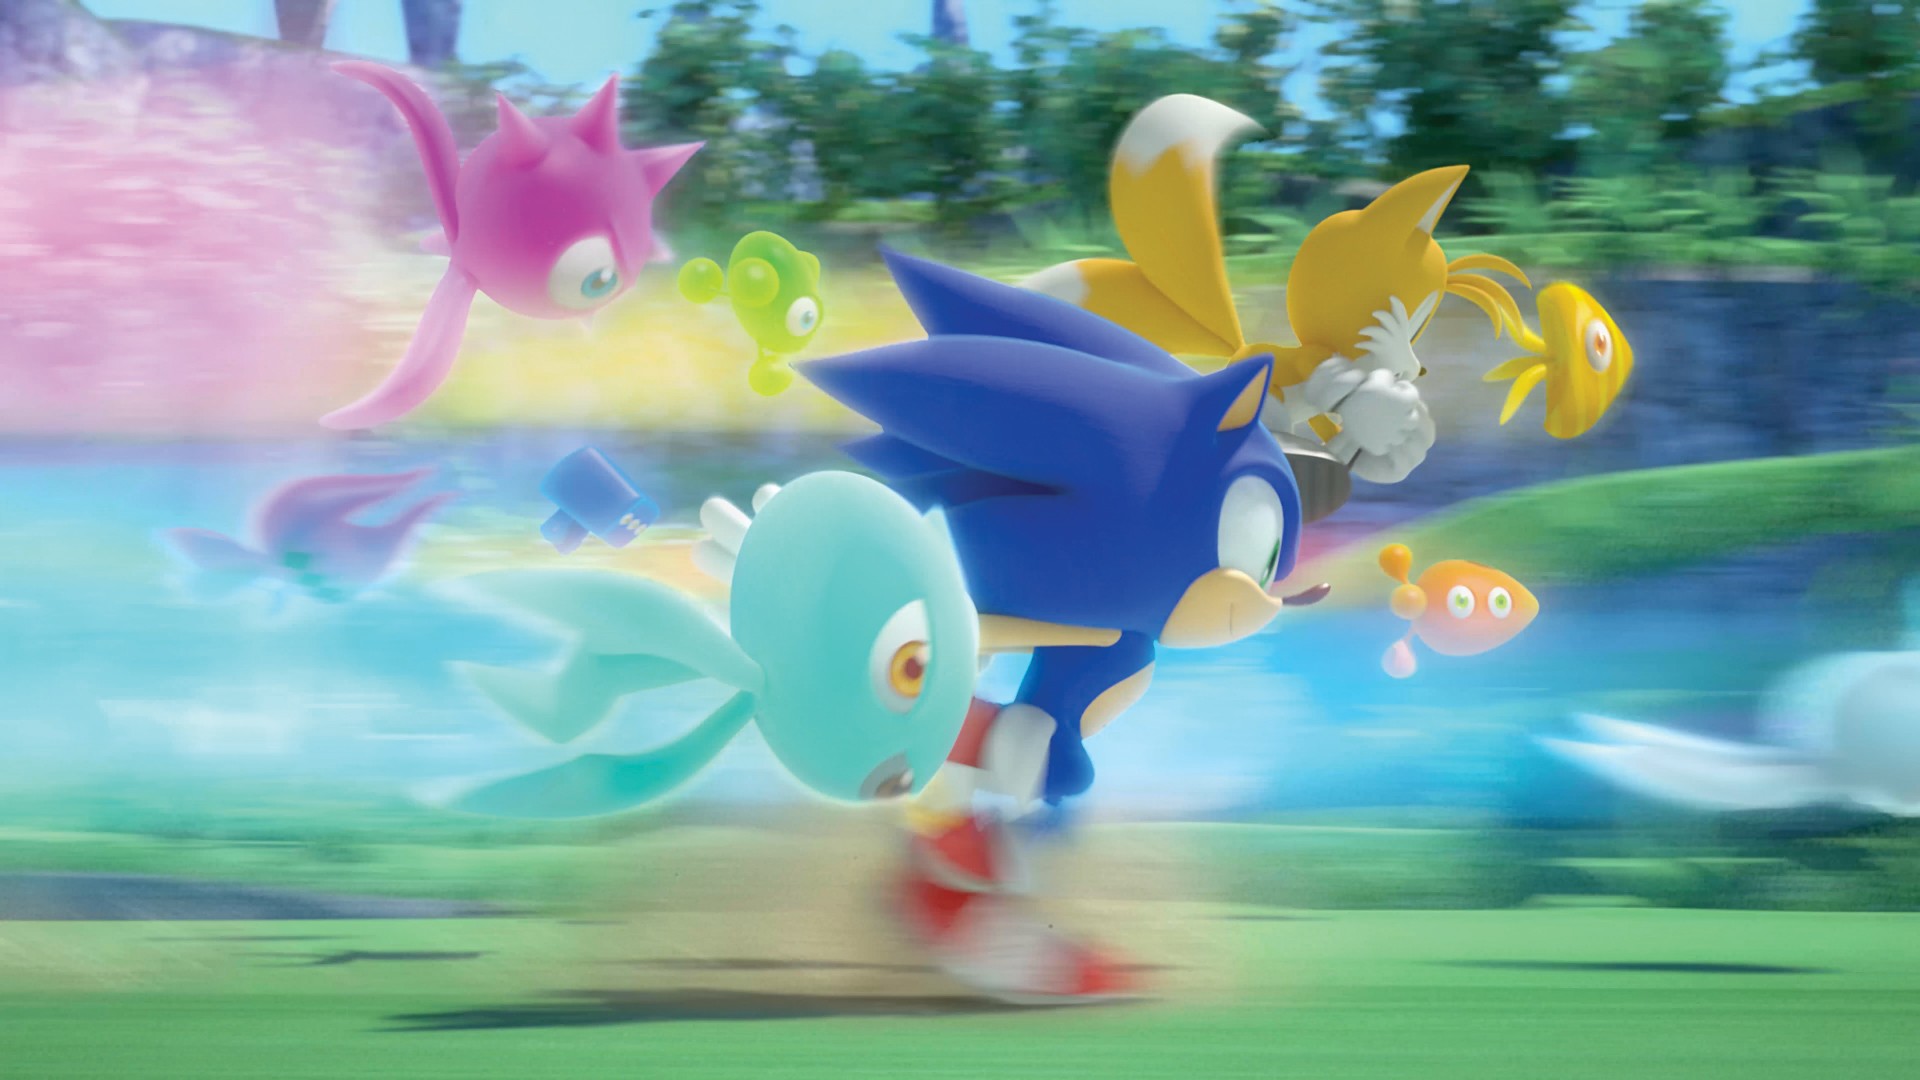 E Se Esses Jogos Do Sonic Fossem Lançados Para Xbox 360?